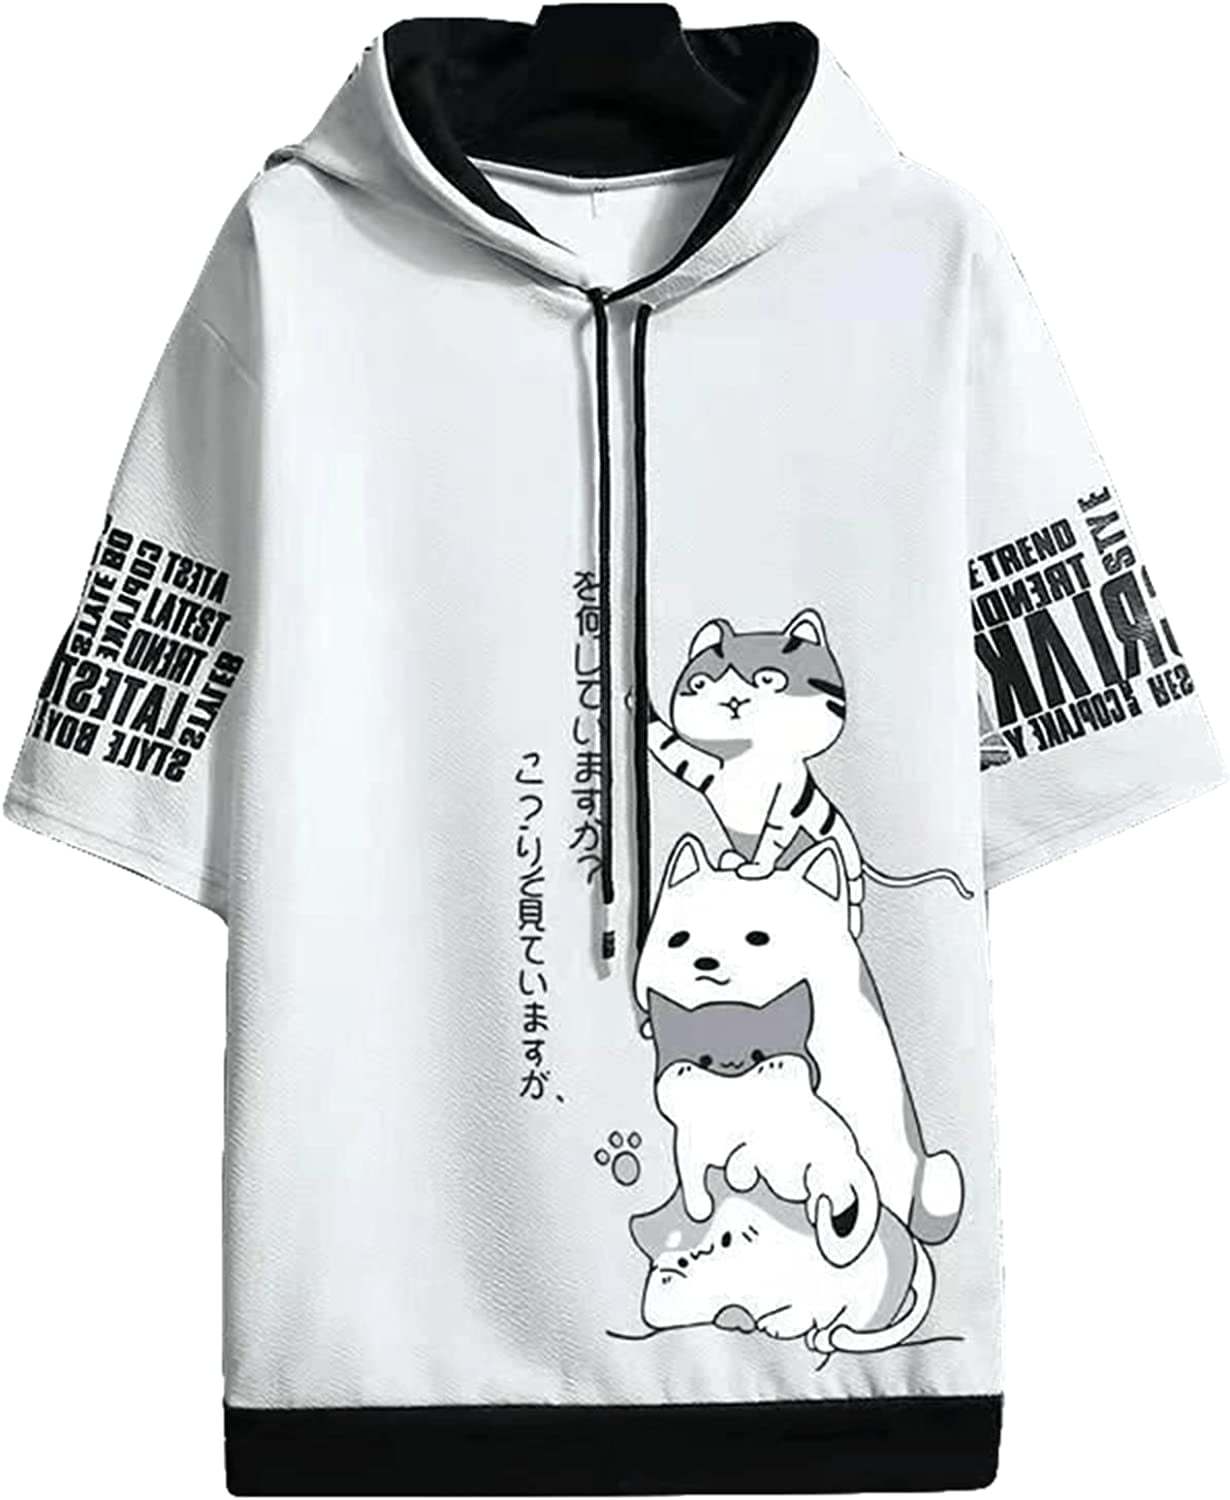 Japanese Do It Yourself Anime Unisex Sweatshirt - Teeruto